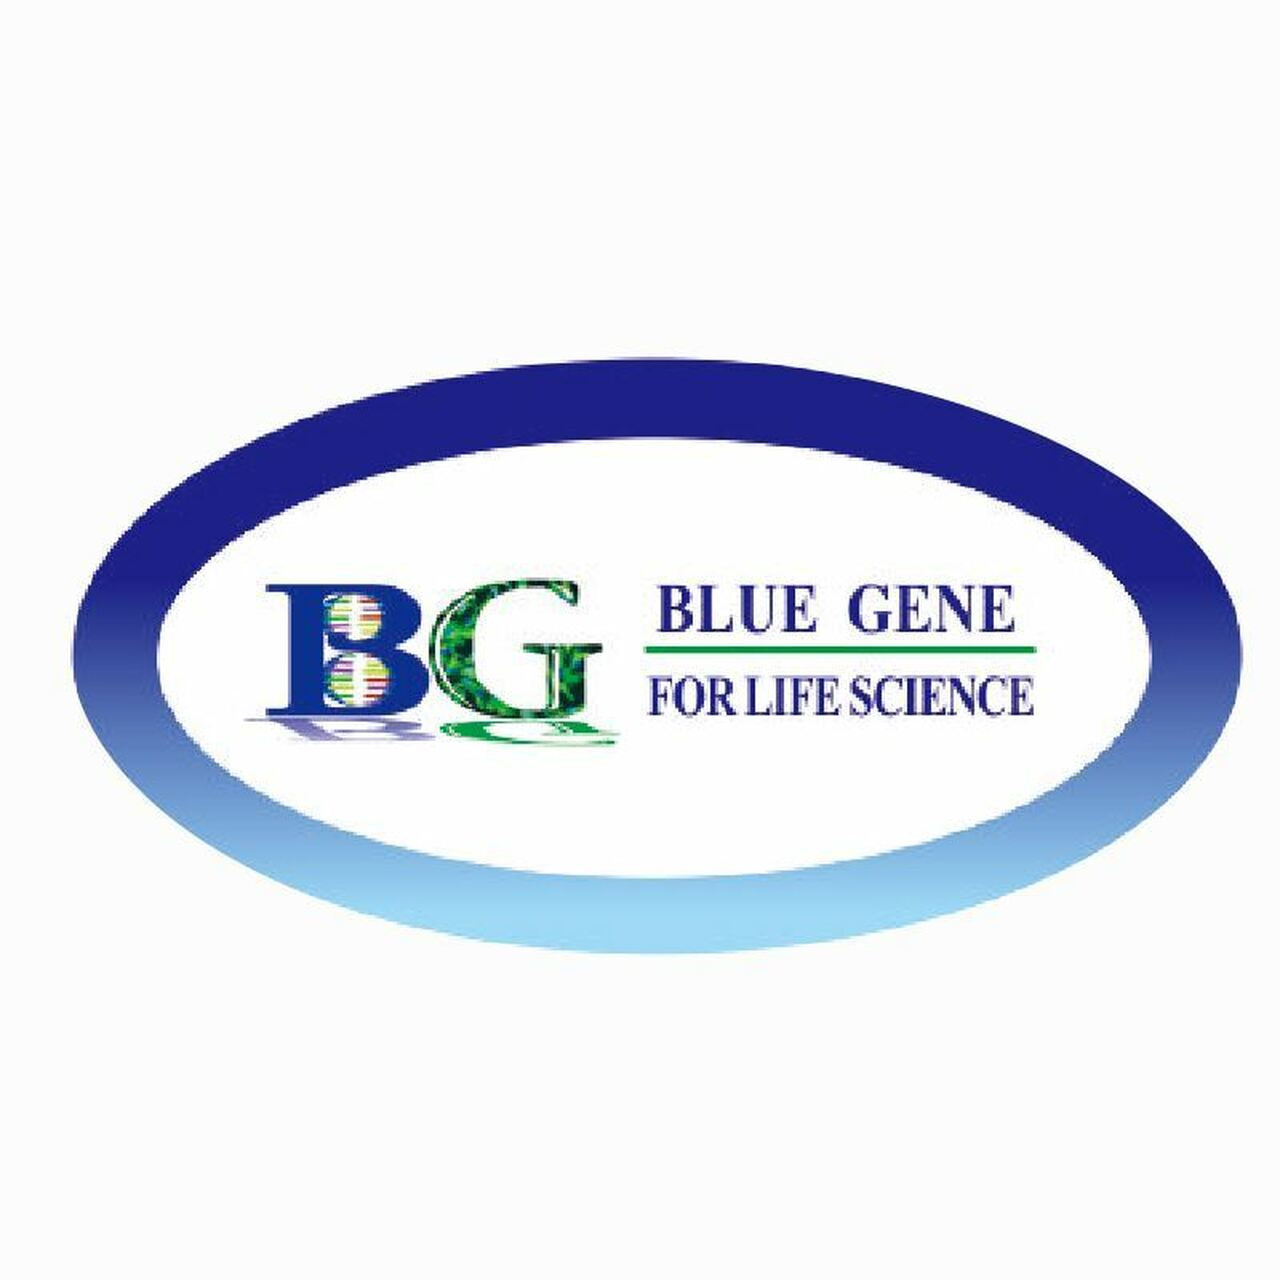 bluegene-soluble-suppression-of-tumorigenicity-2-elisa-kit